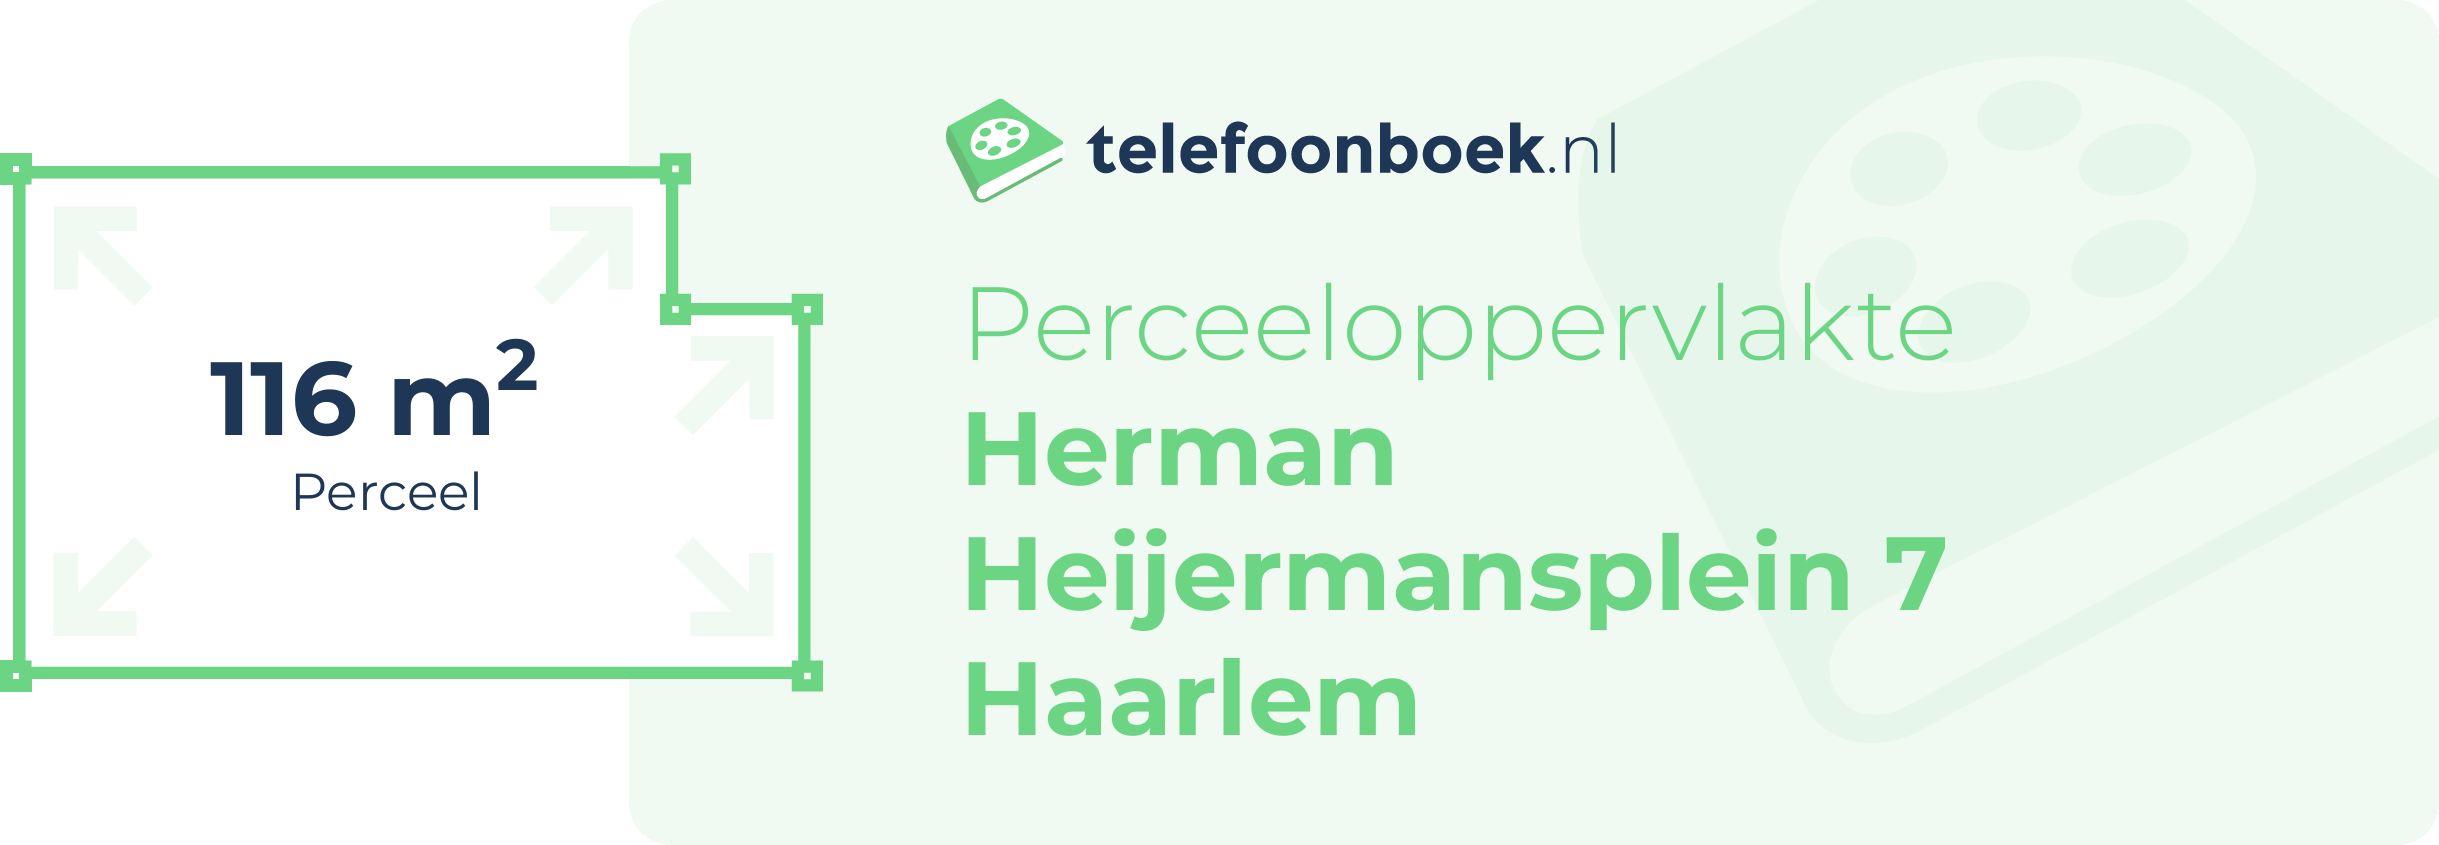 Perceeloppervlakte Herman Heijermansplein 7 Haarlem